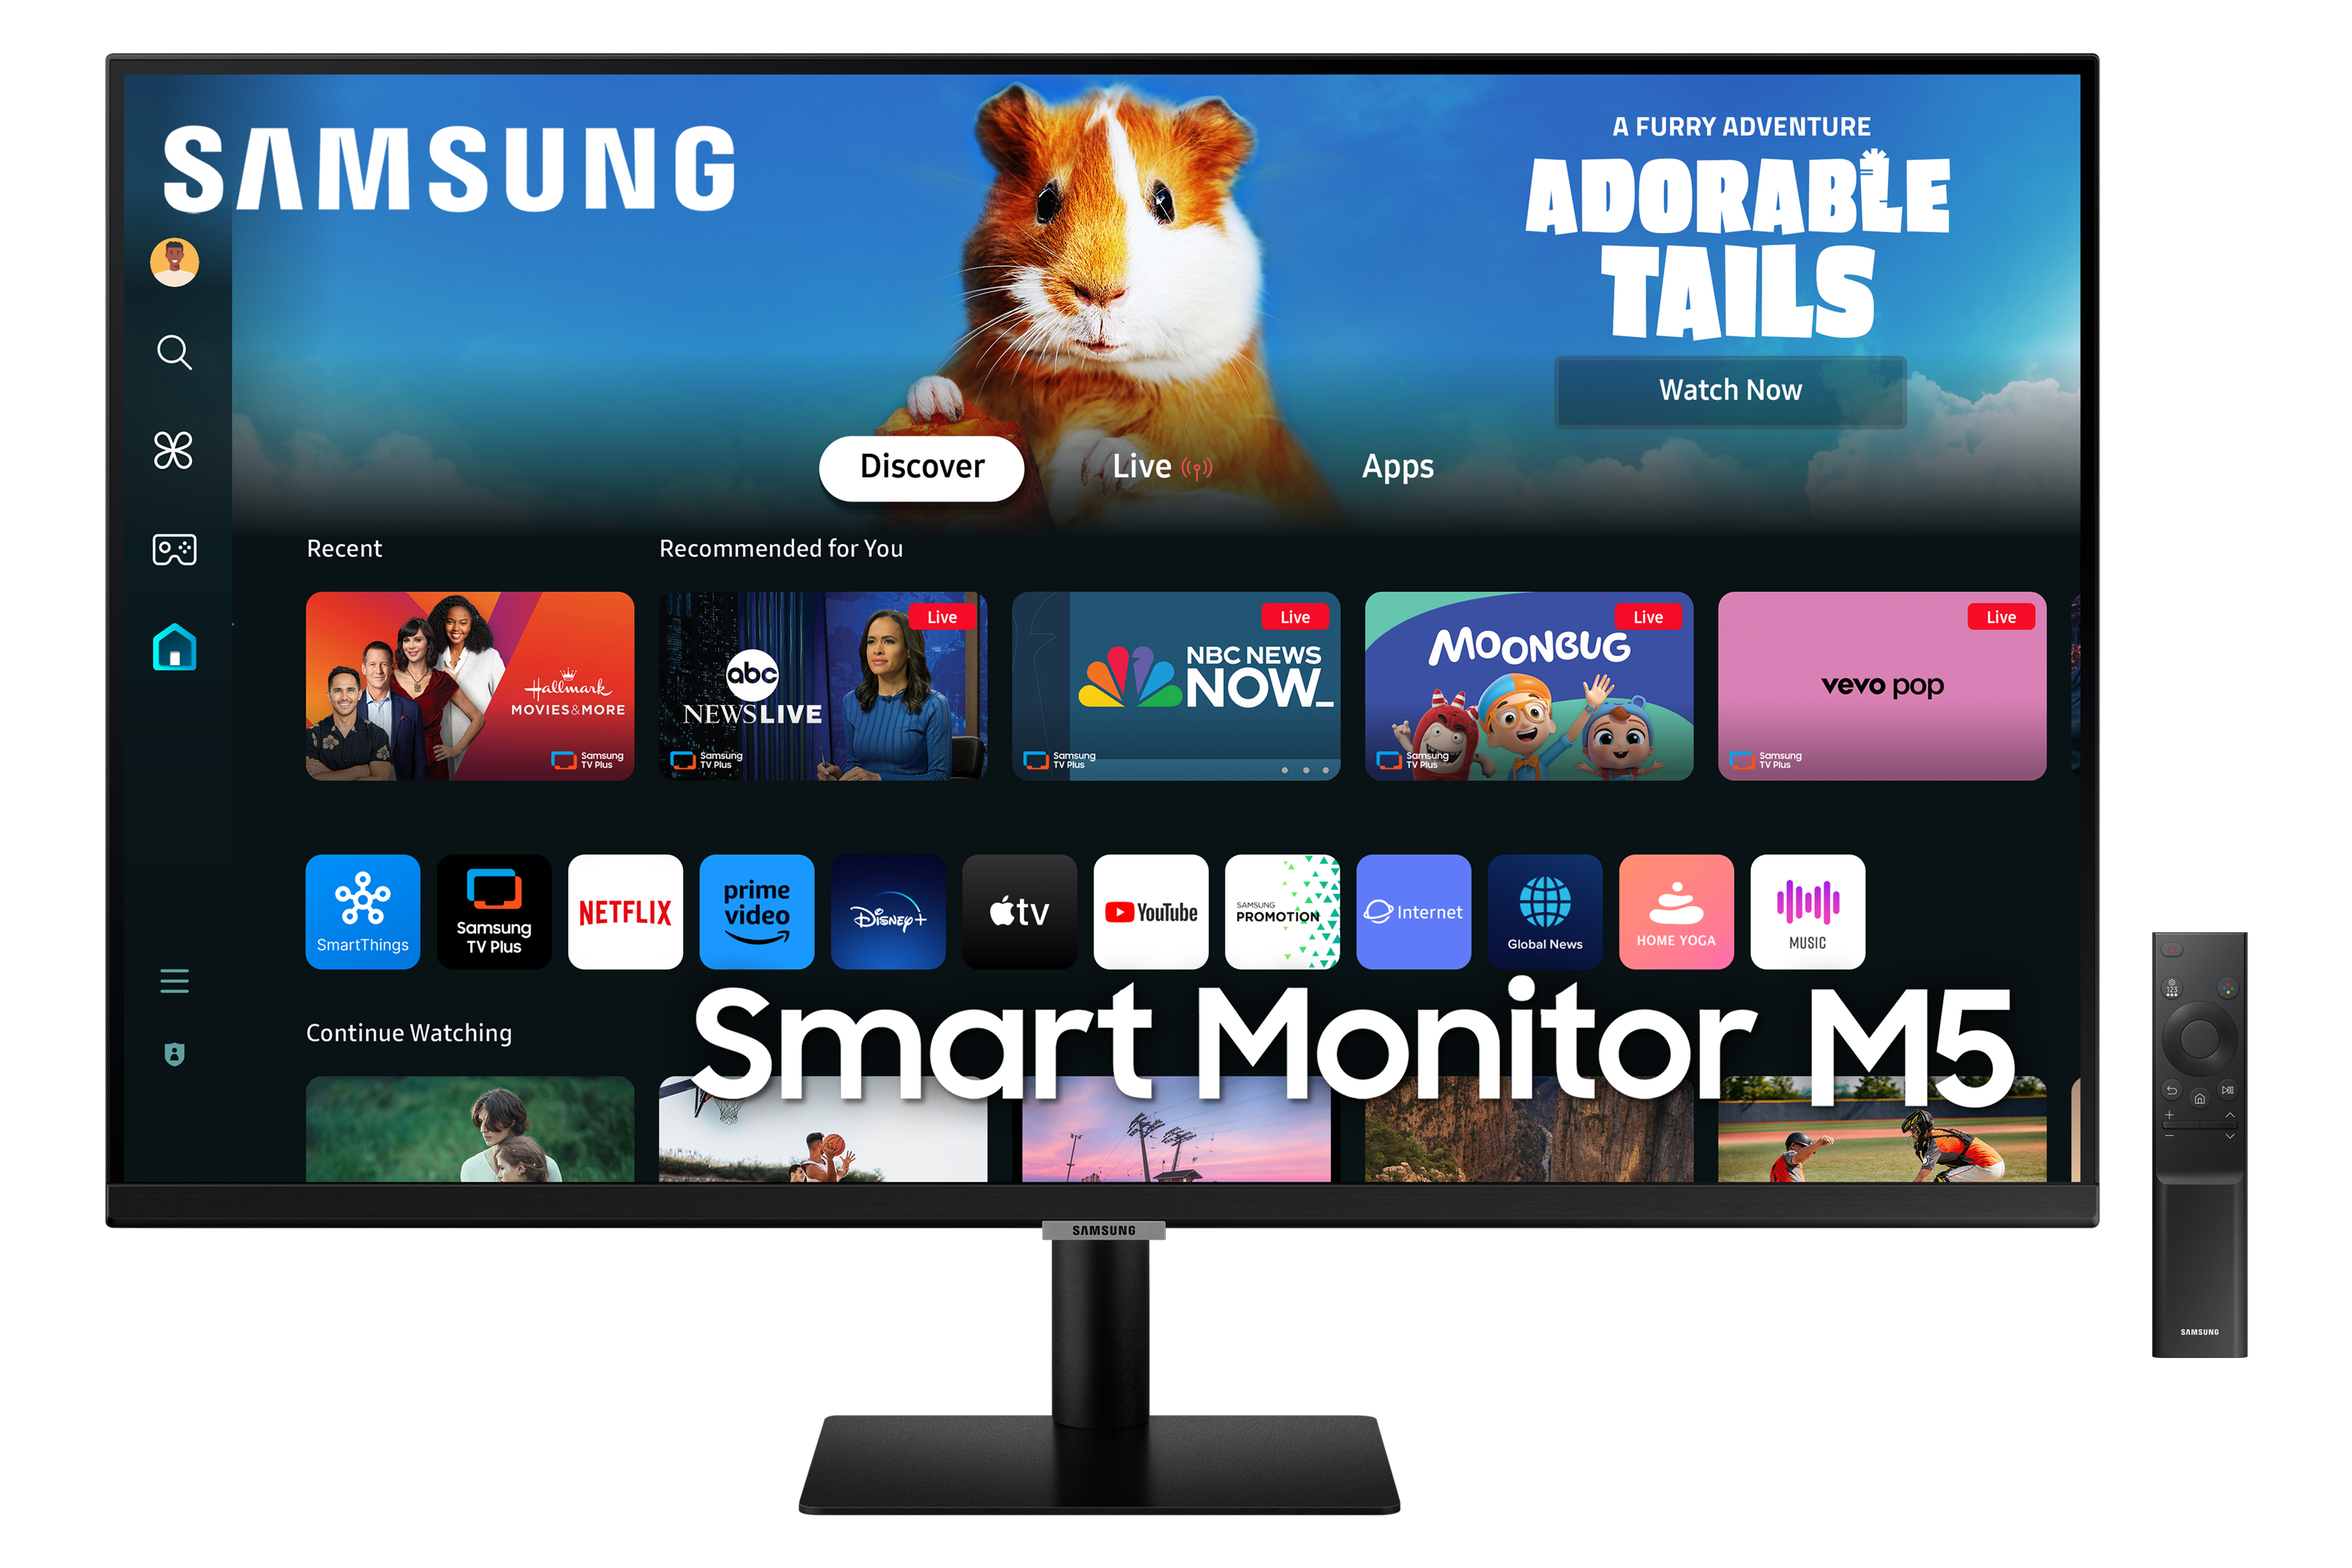 Samsung Smart Monitor M5 M50D écran plat de PC 81,3 cm (32") 1920 x 1080 pixels Full HD LED Noir